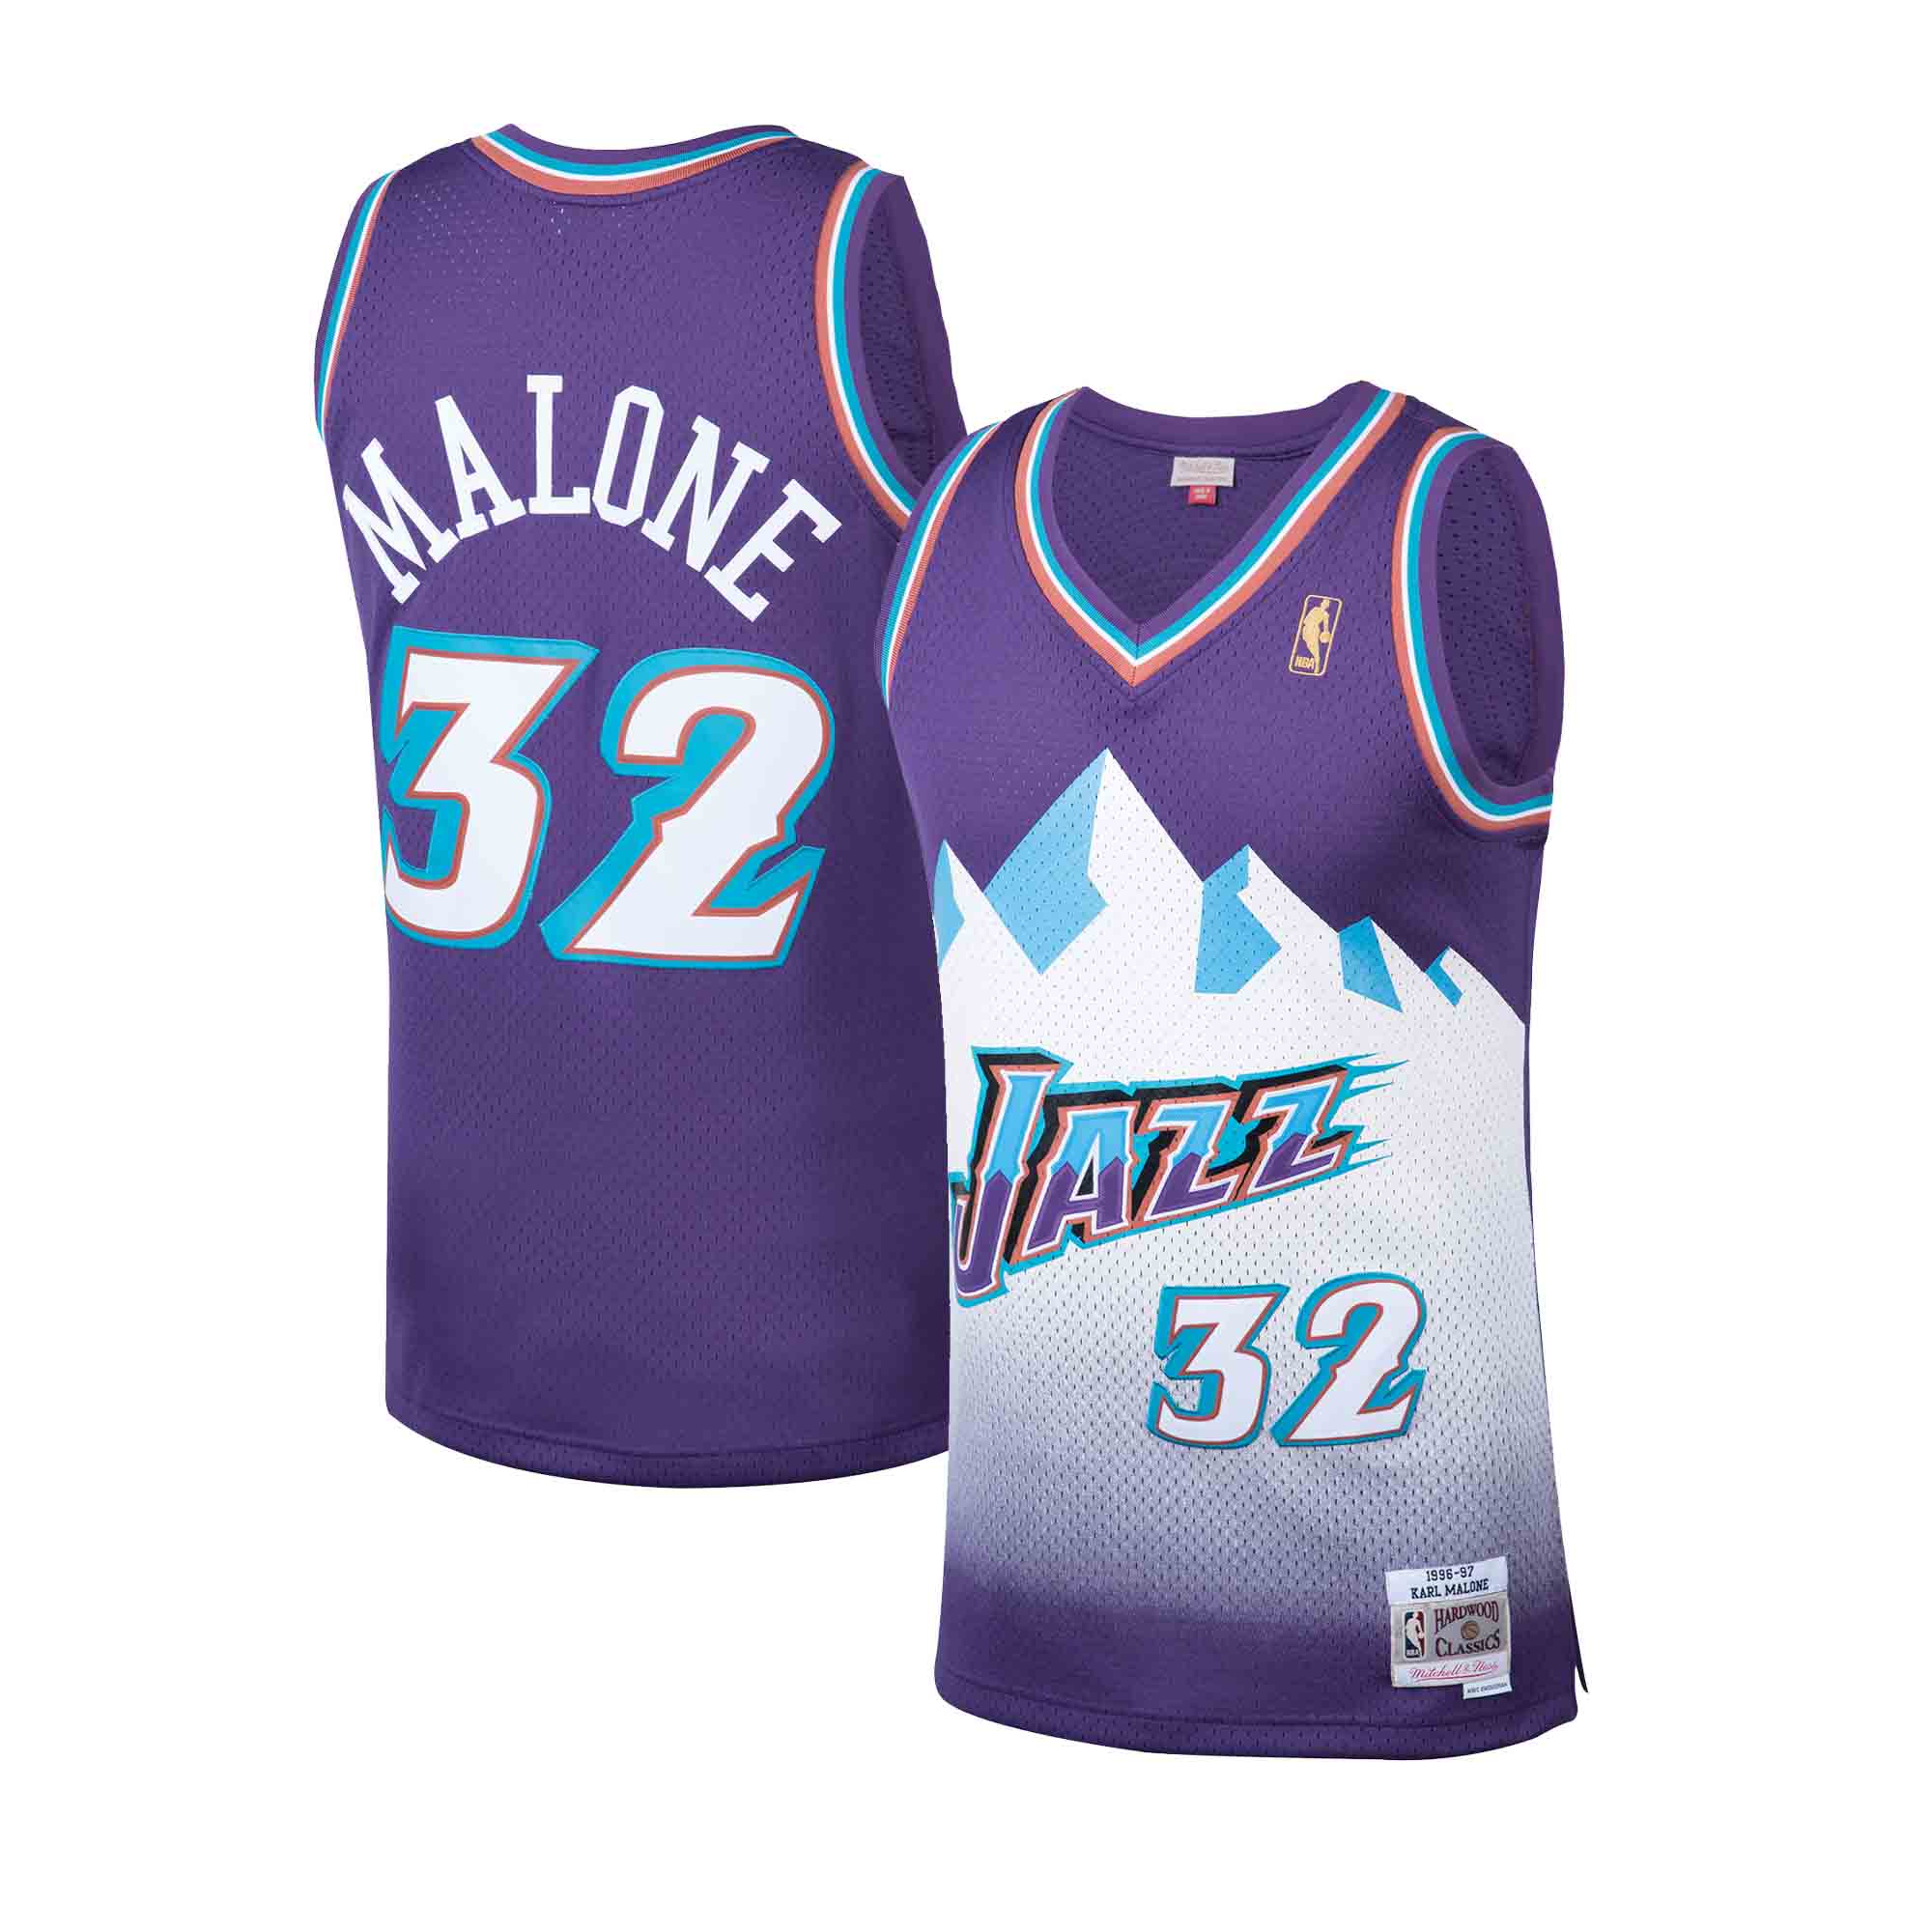 1998-02 Utah Jazz Malone #32 Champion Alternate Jersey (Excellent) M